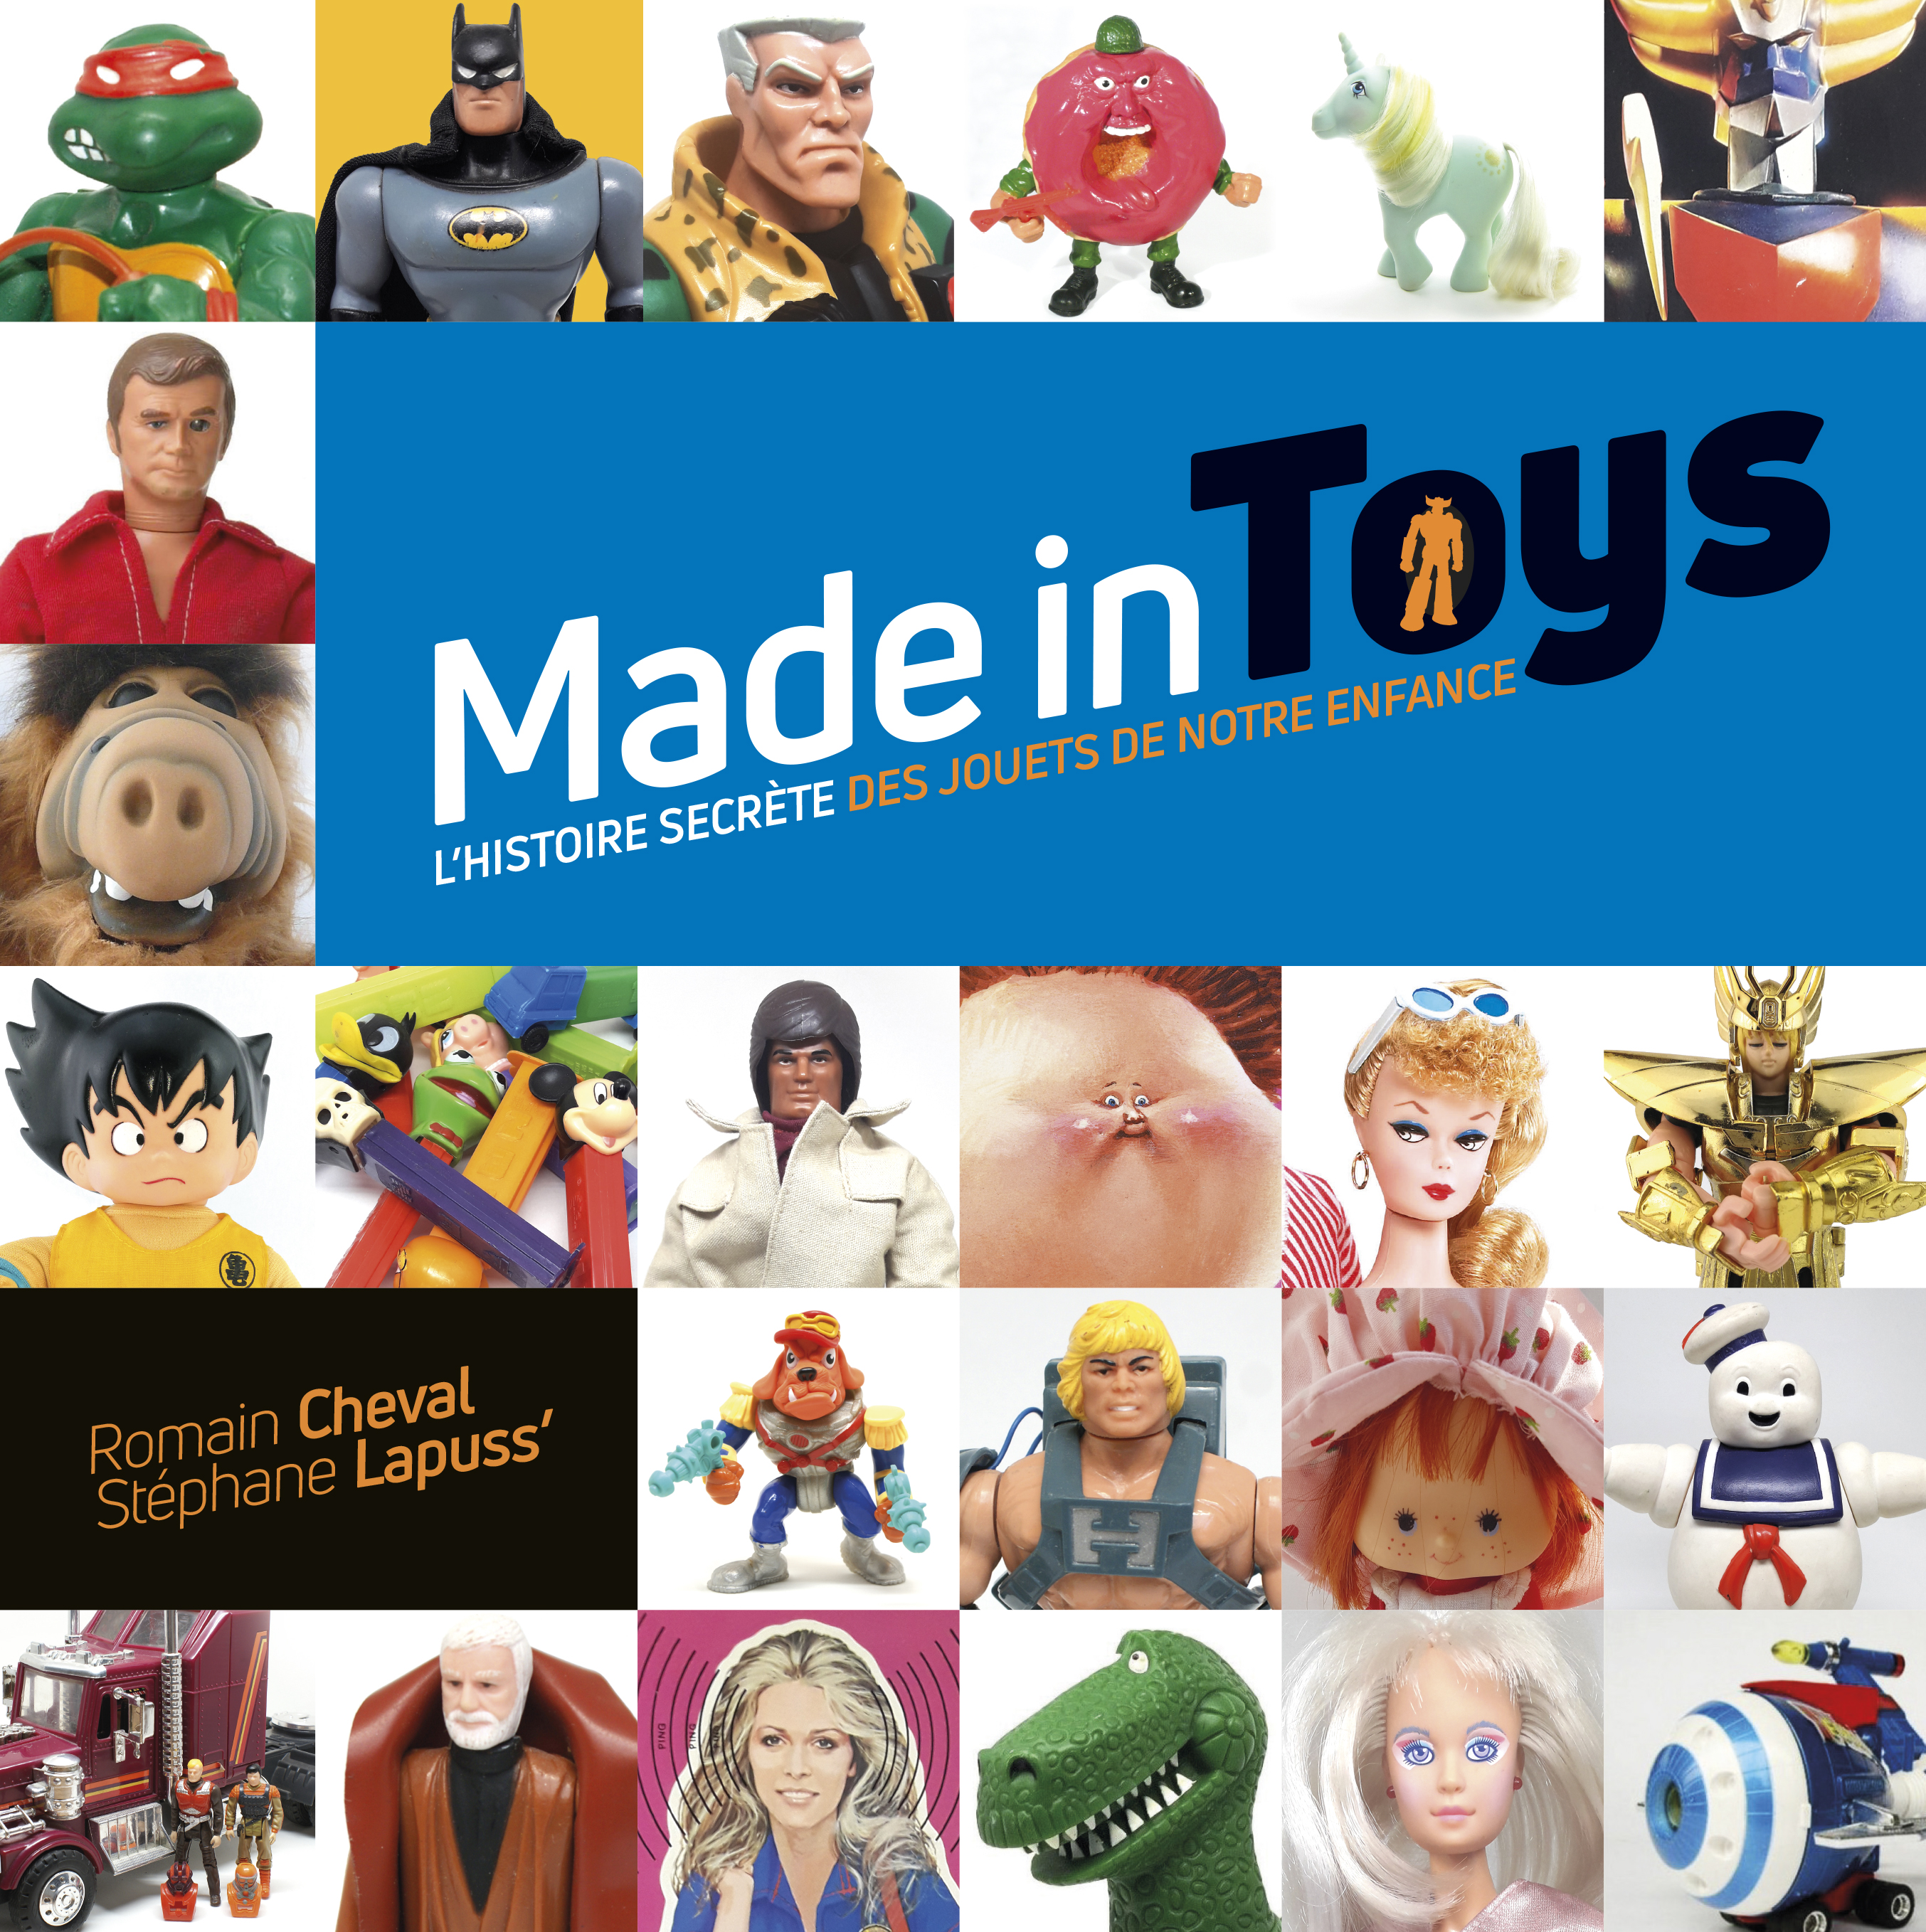 Made in Toys, l'histoire secrète des jouets de notre enfance – Made in Toys, l'histoire secrète des jouets de notre enfance - couv